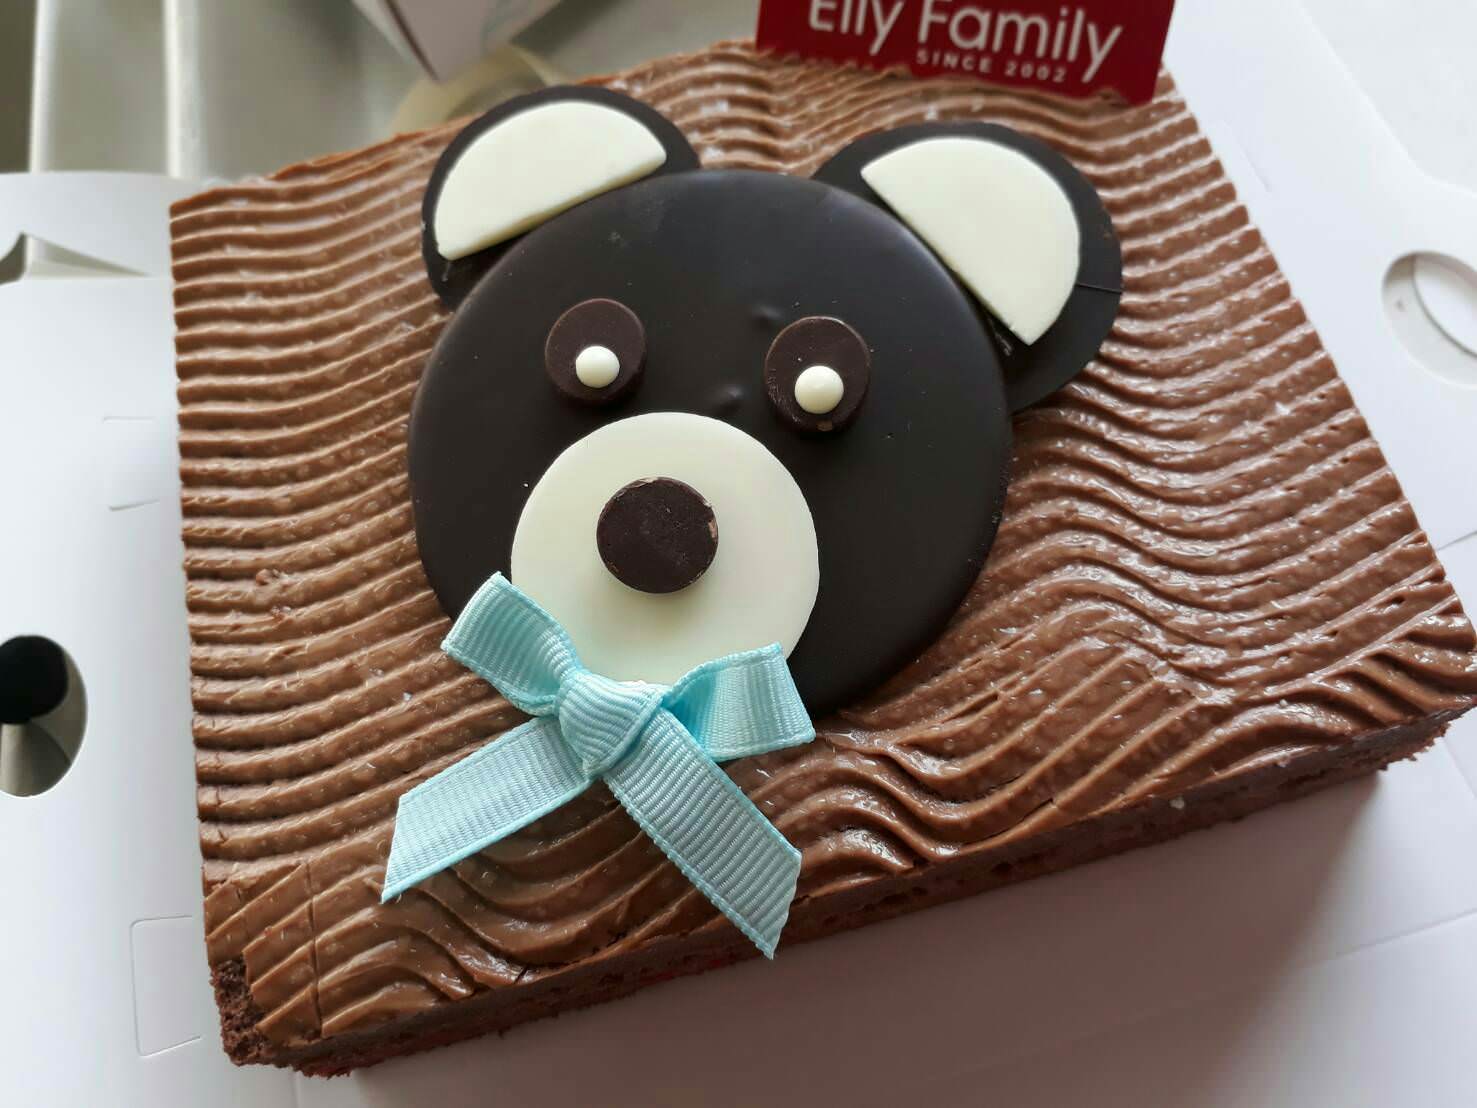 腳丫蛋糕,蛋糕捲,蛋糕禮盒,Elly Family,彌月蛋糕,彌月蛋糕試吃,彌月蛋糕推薦,台北彌月蛋糕,新竹彌月蛋糕,艾立蛋糕,生巧克力蛋糕